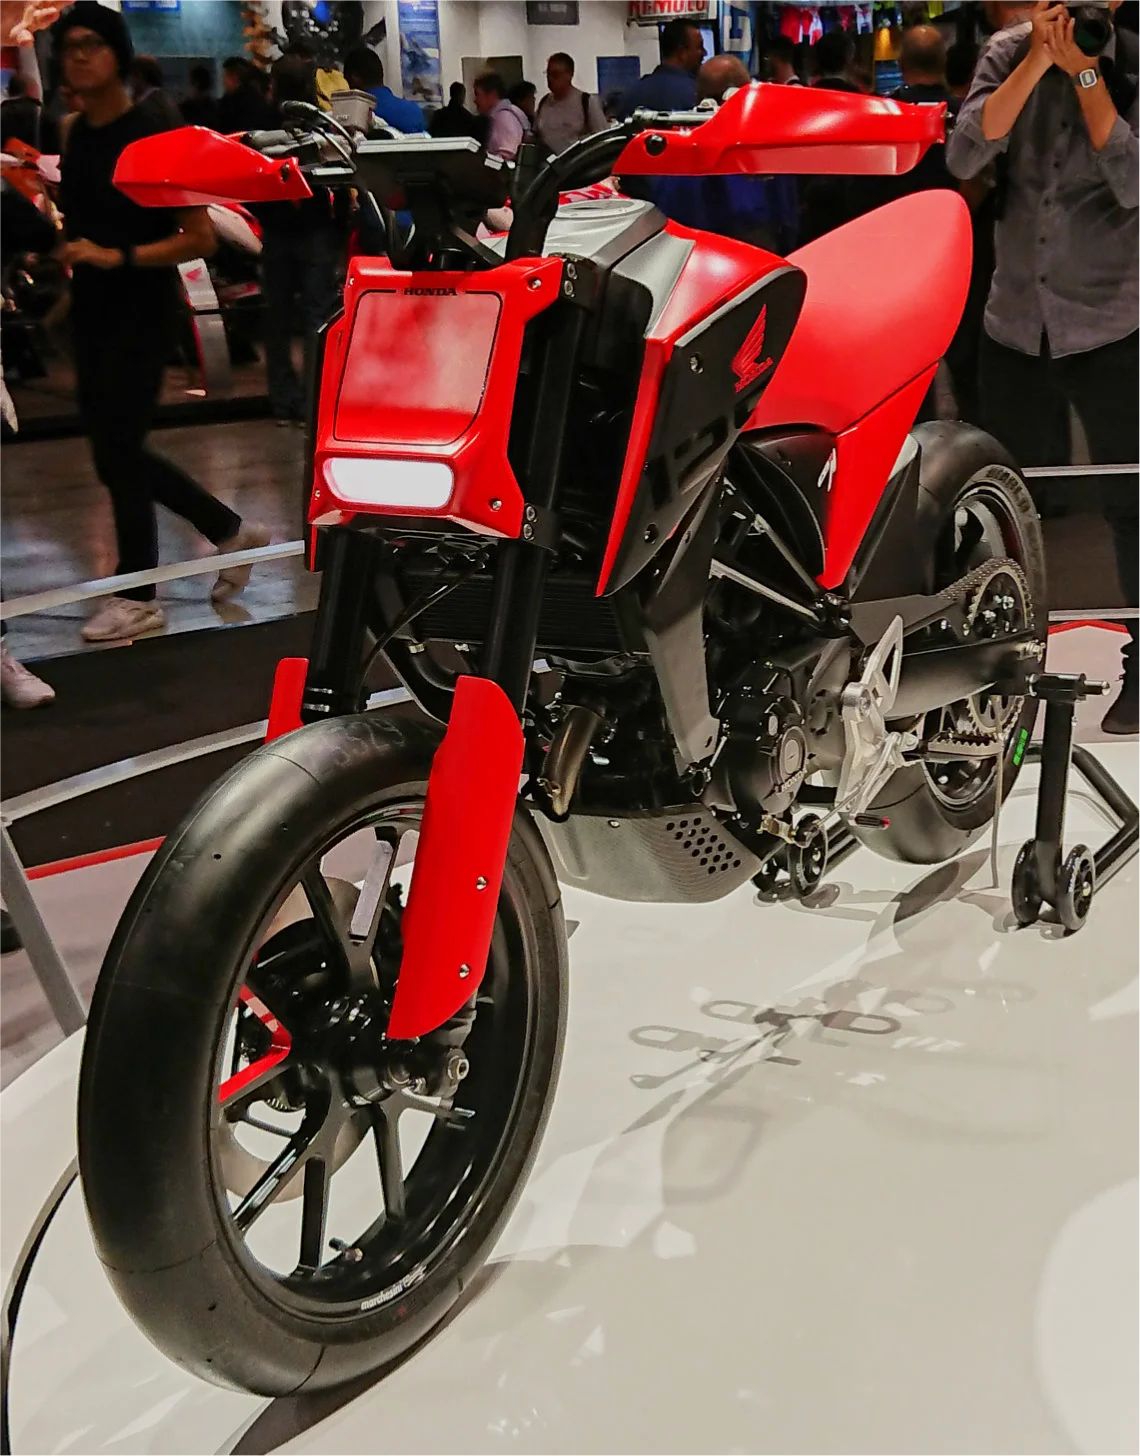 Honda CB 125M / 125X Concepts